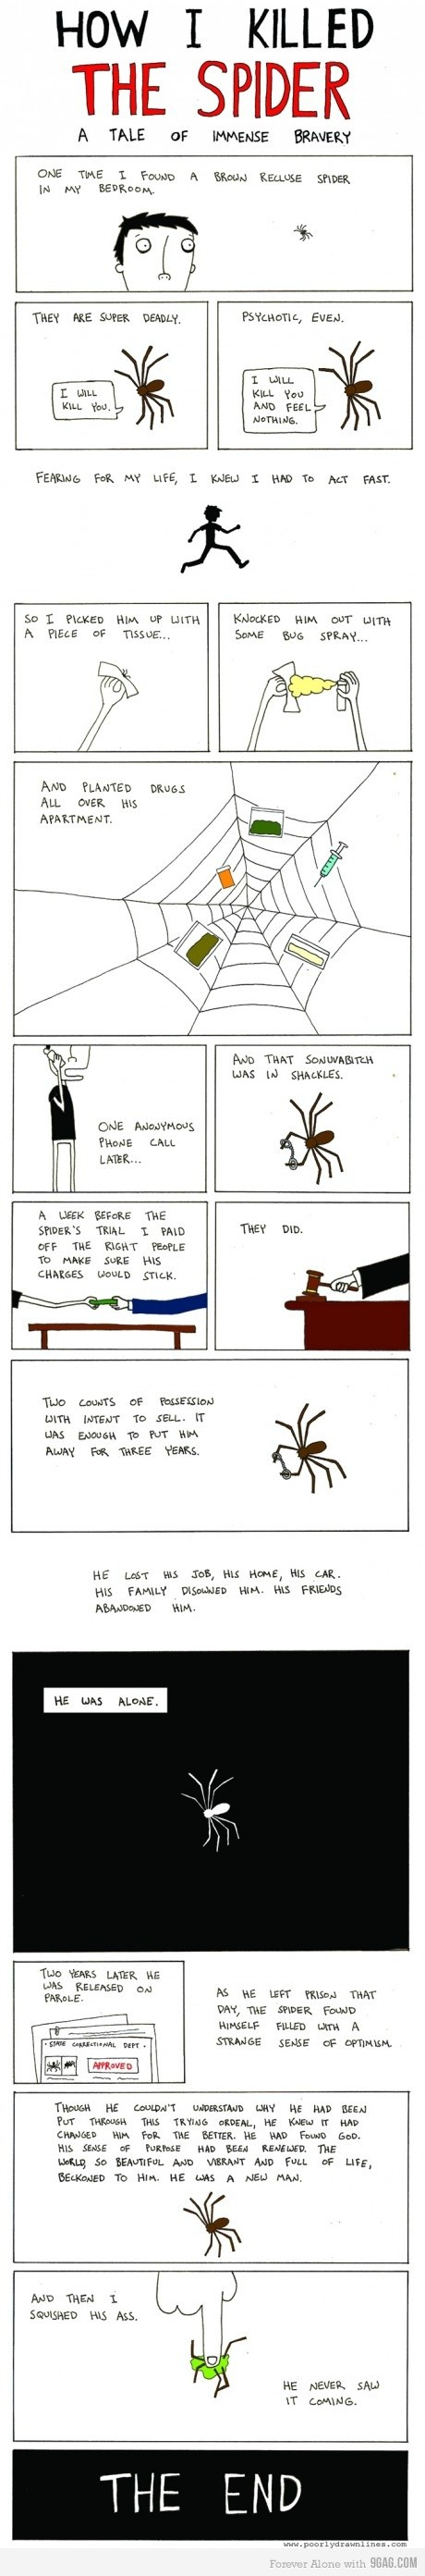 Hur man slår ihjäl en spindel